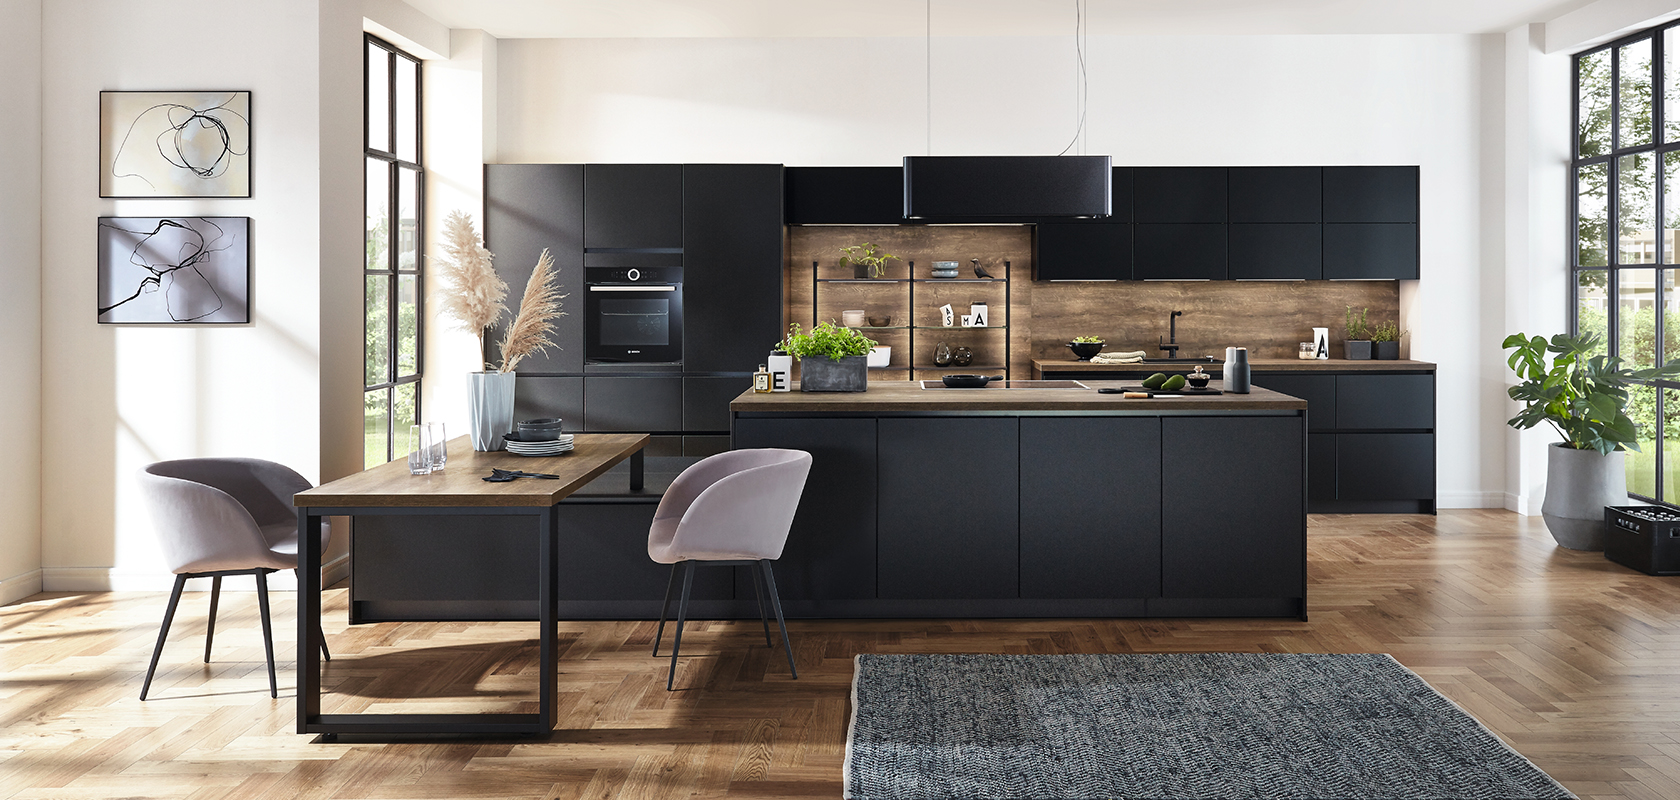 Intérieur de cuisine moderne mettant en valeur des armoires noires élégantes, des accents en bois et un îlot spacieux complété par la lumière naturelle des grandes fenêtres.